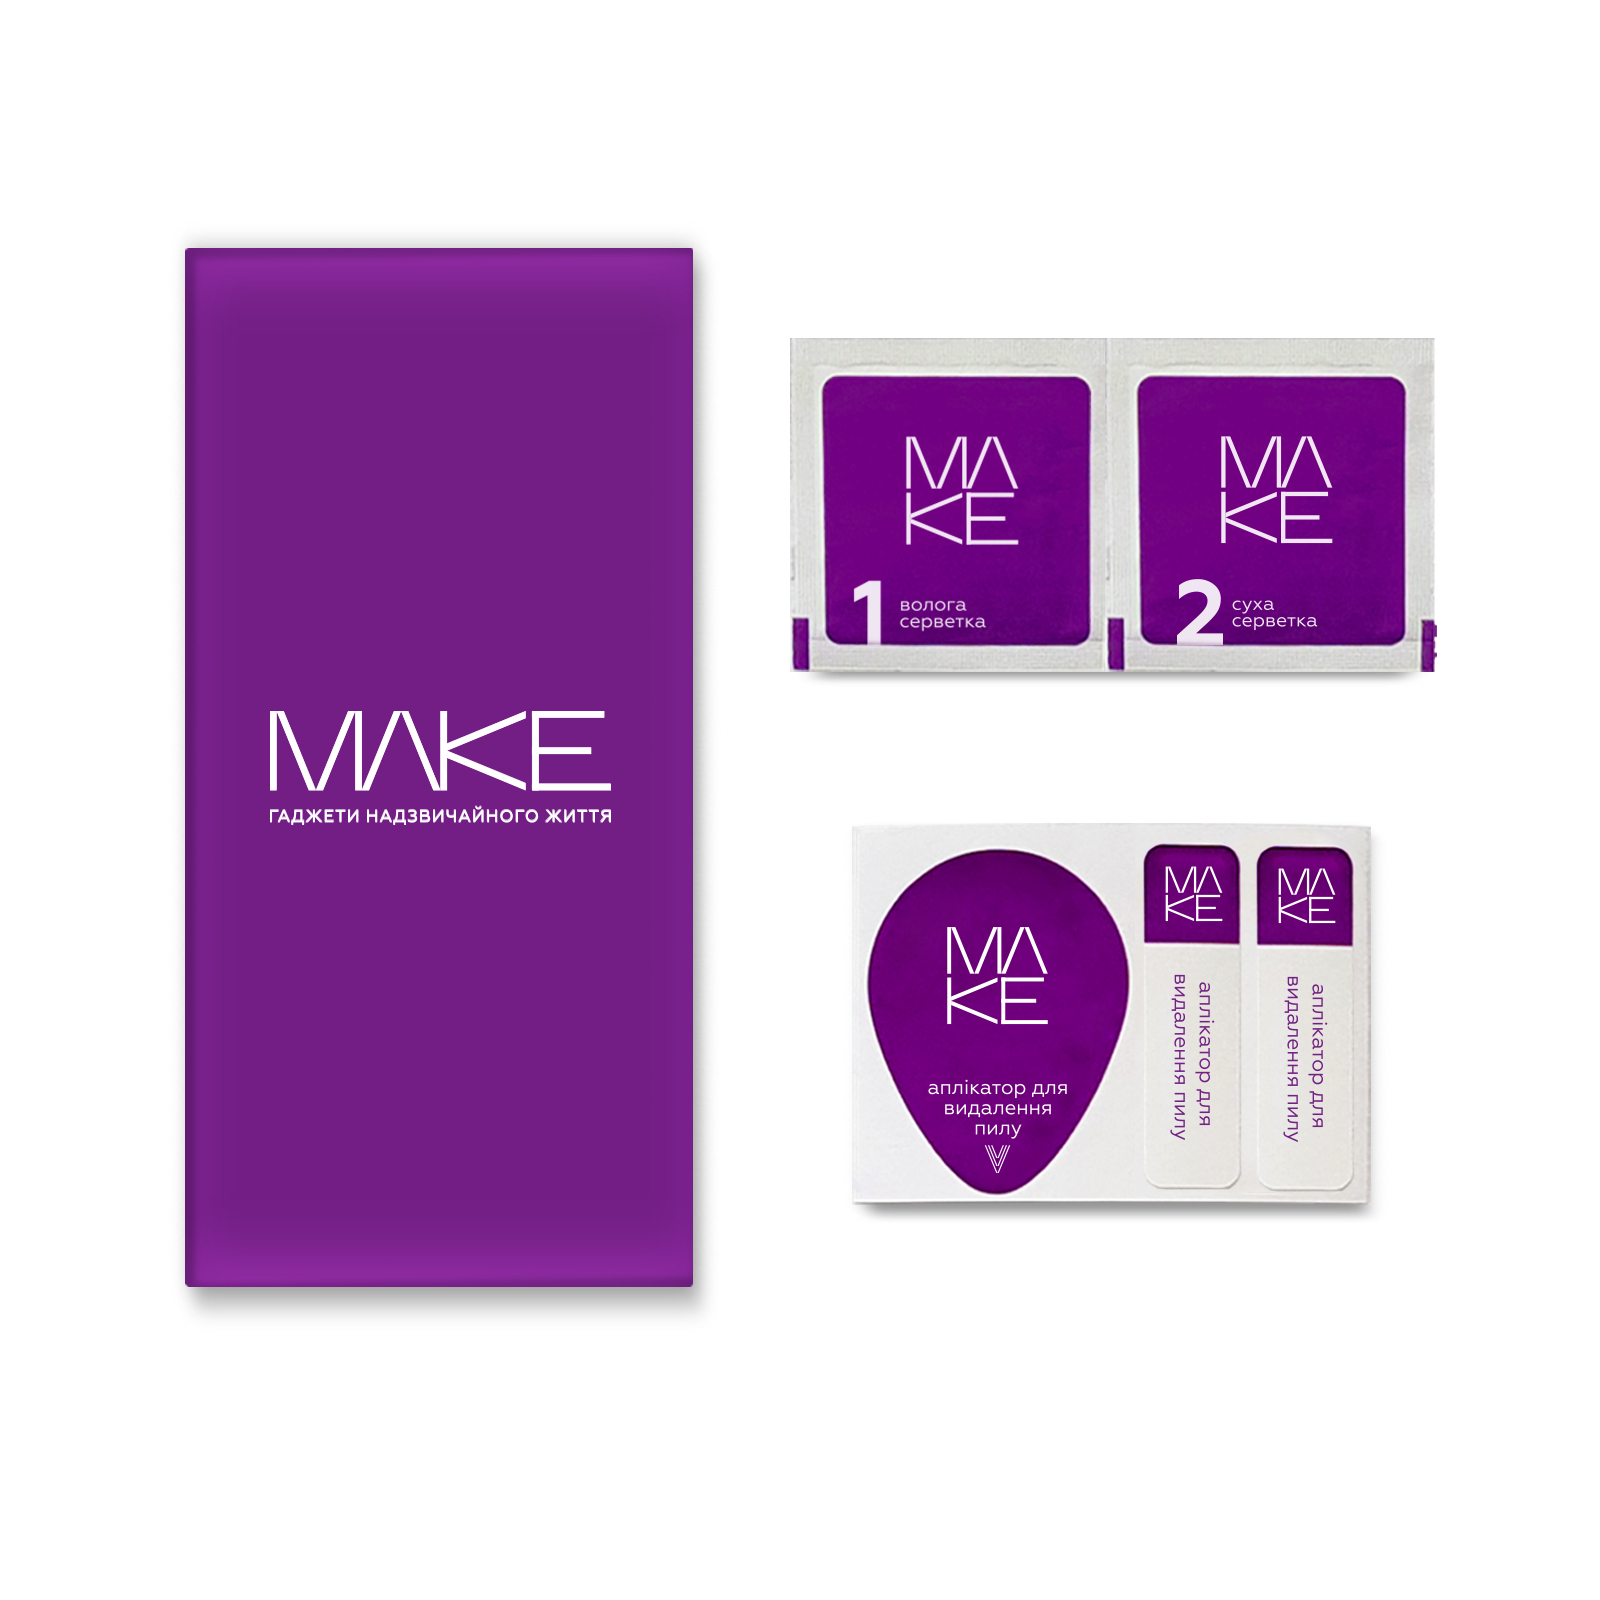 Стекло защитное MAKE Samsung S23 (MGF-SS23) изображение 2